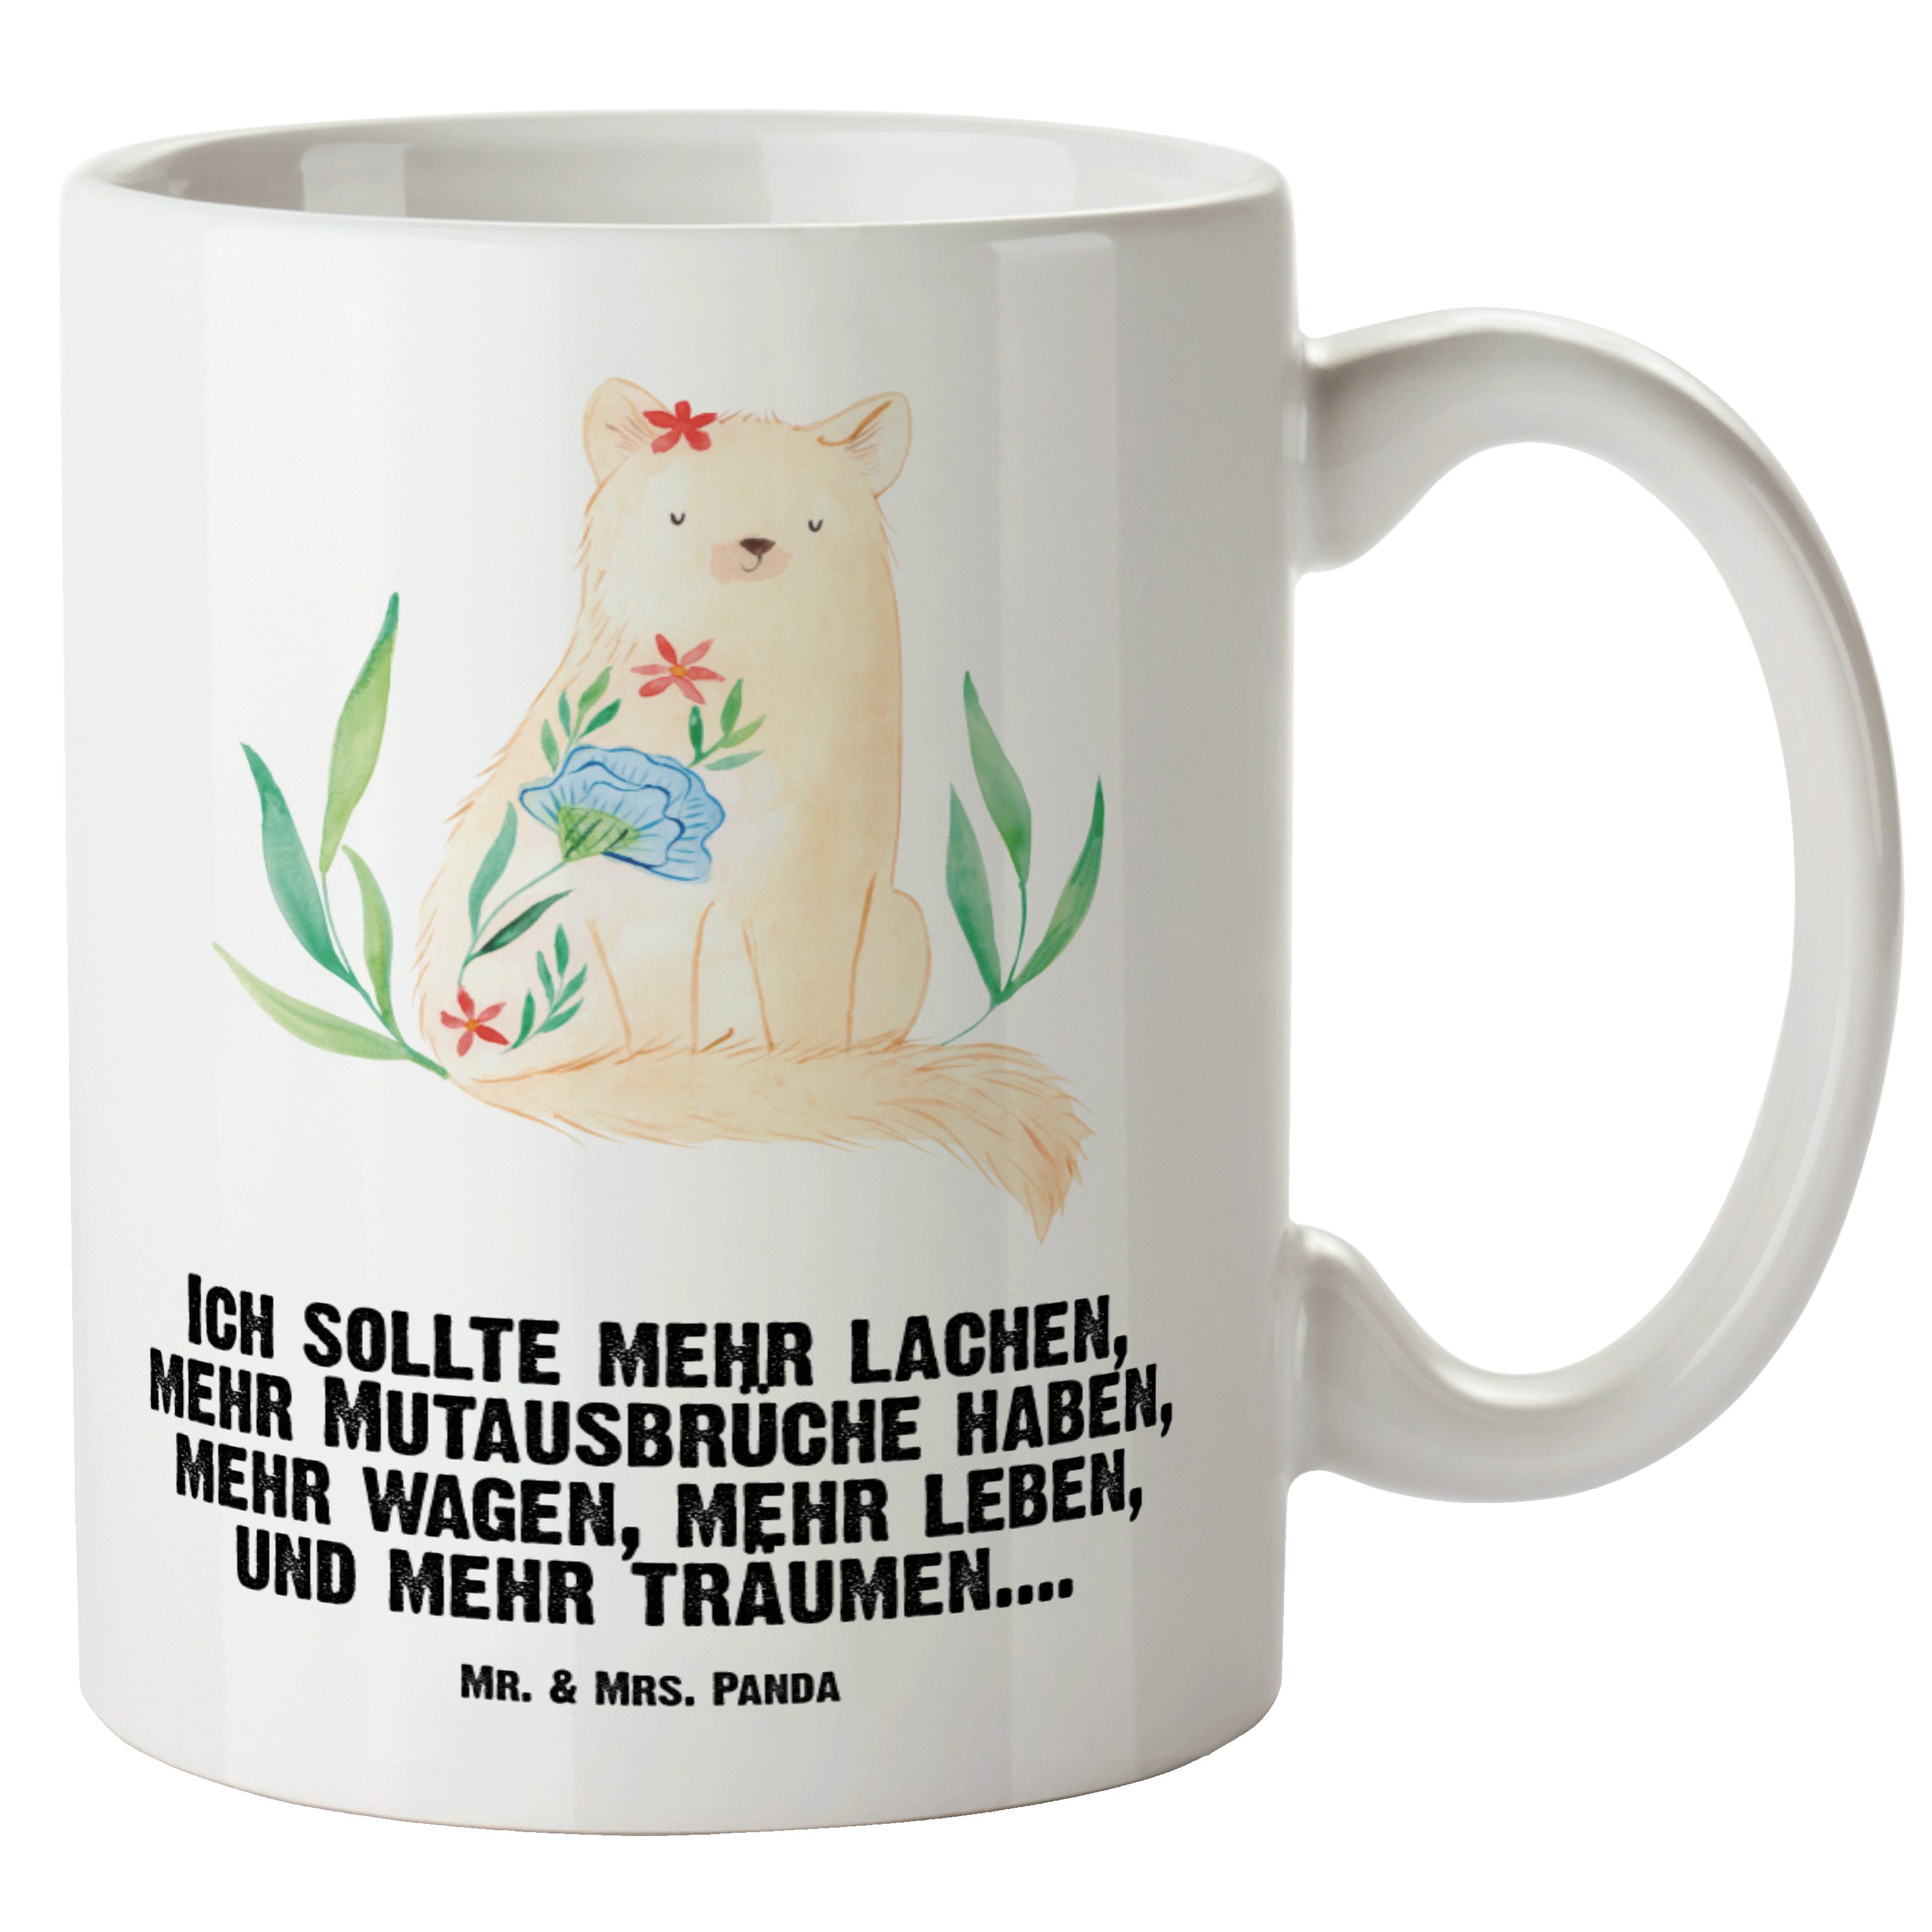 Mr. & Mrs. Panda Tasse Katze Blumen - Weiß - Geschenk, Katzenprodukte, Katzenfan, Grosse Kaf, XL Tasse Keramik